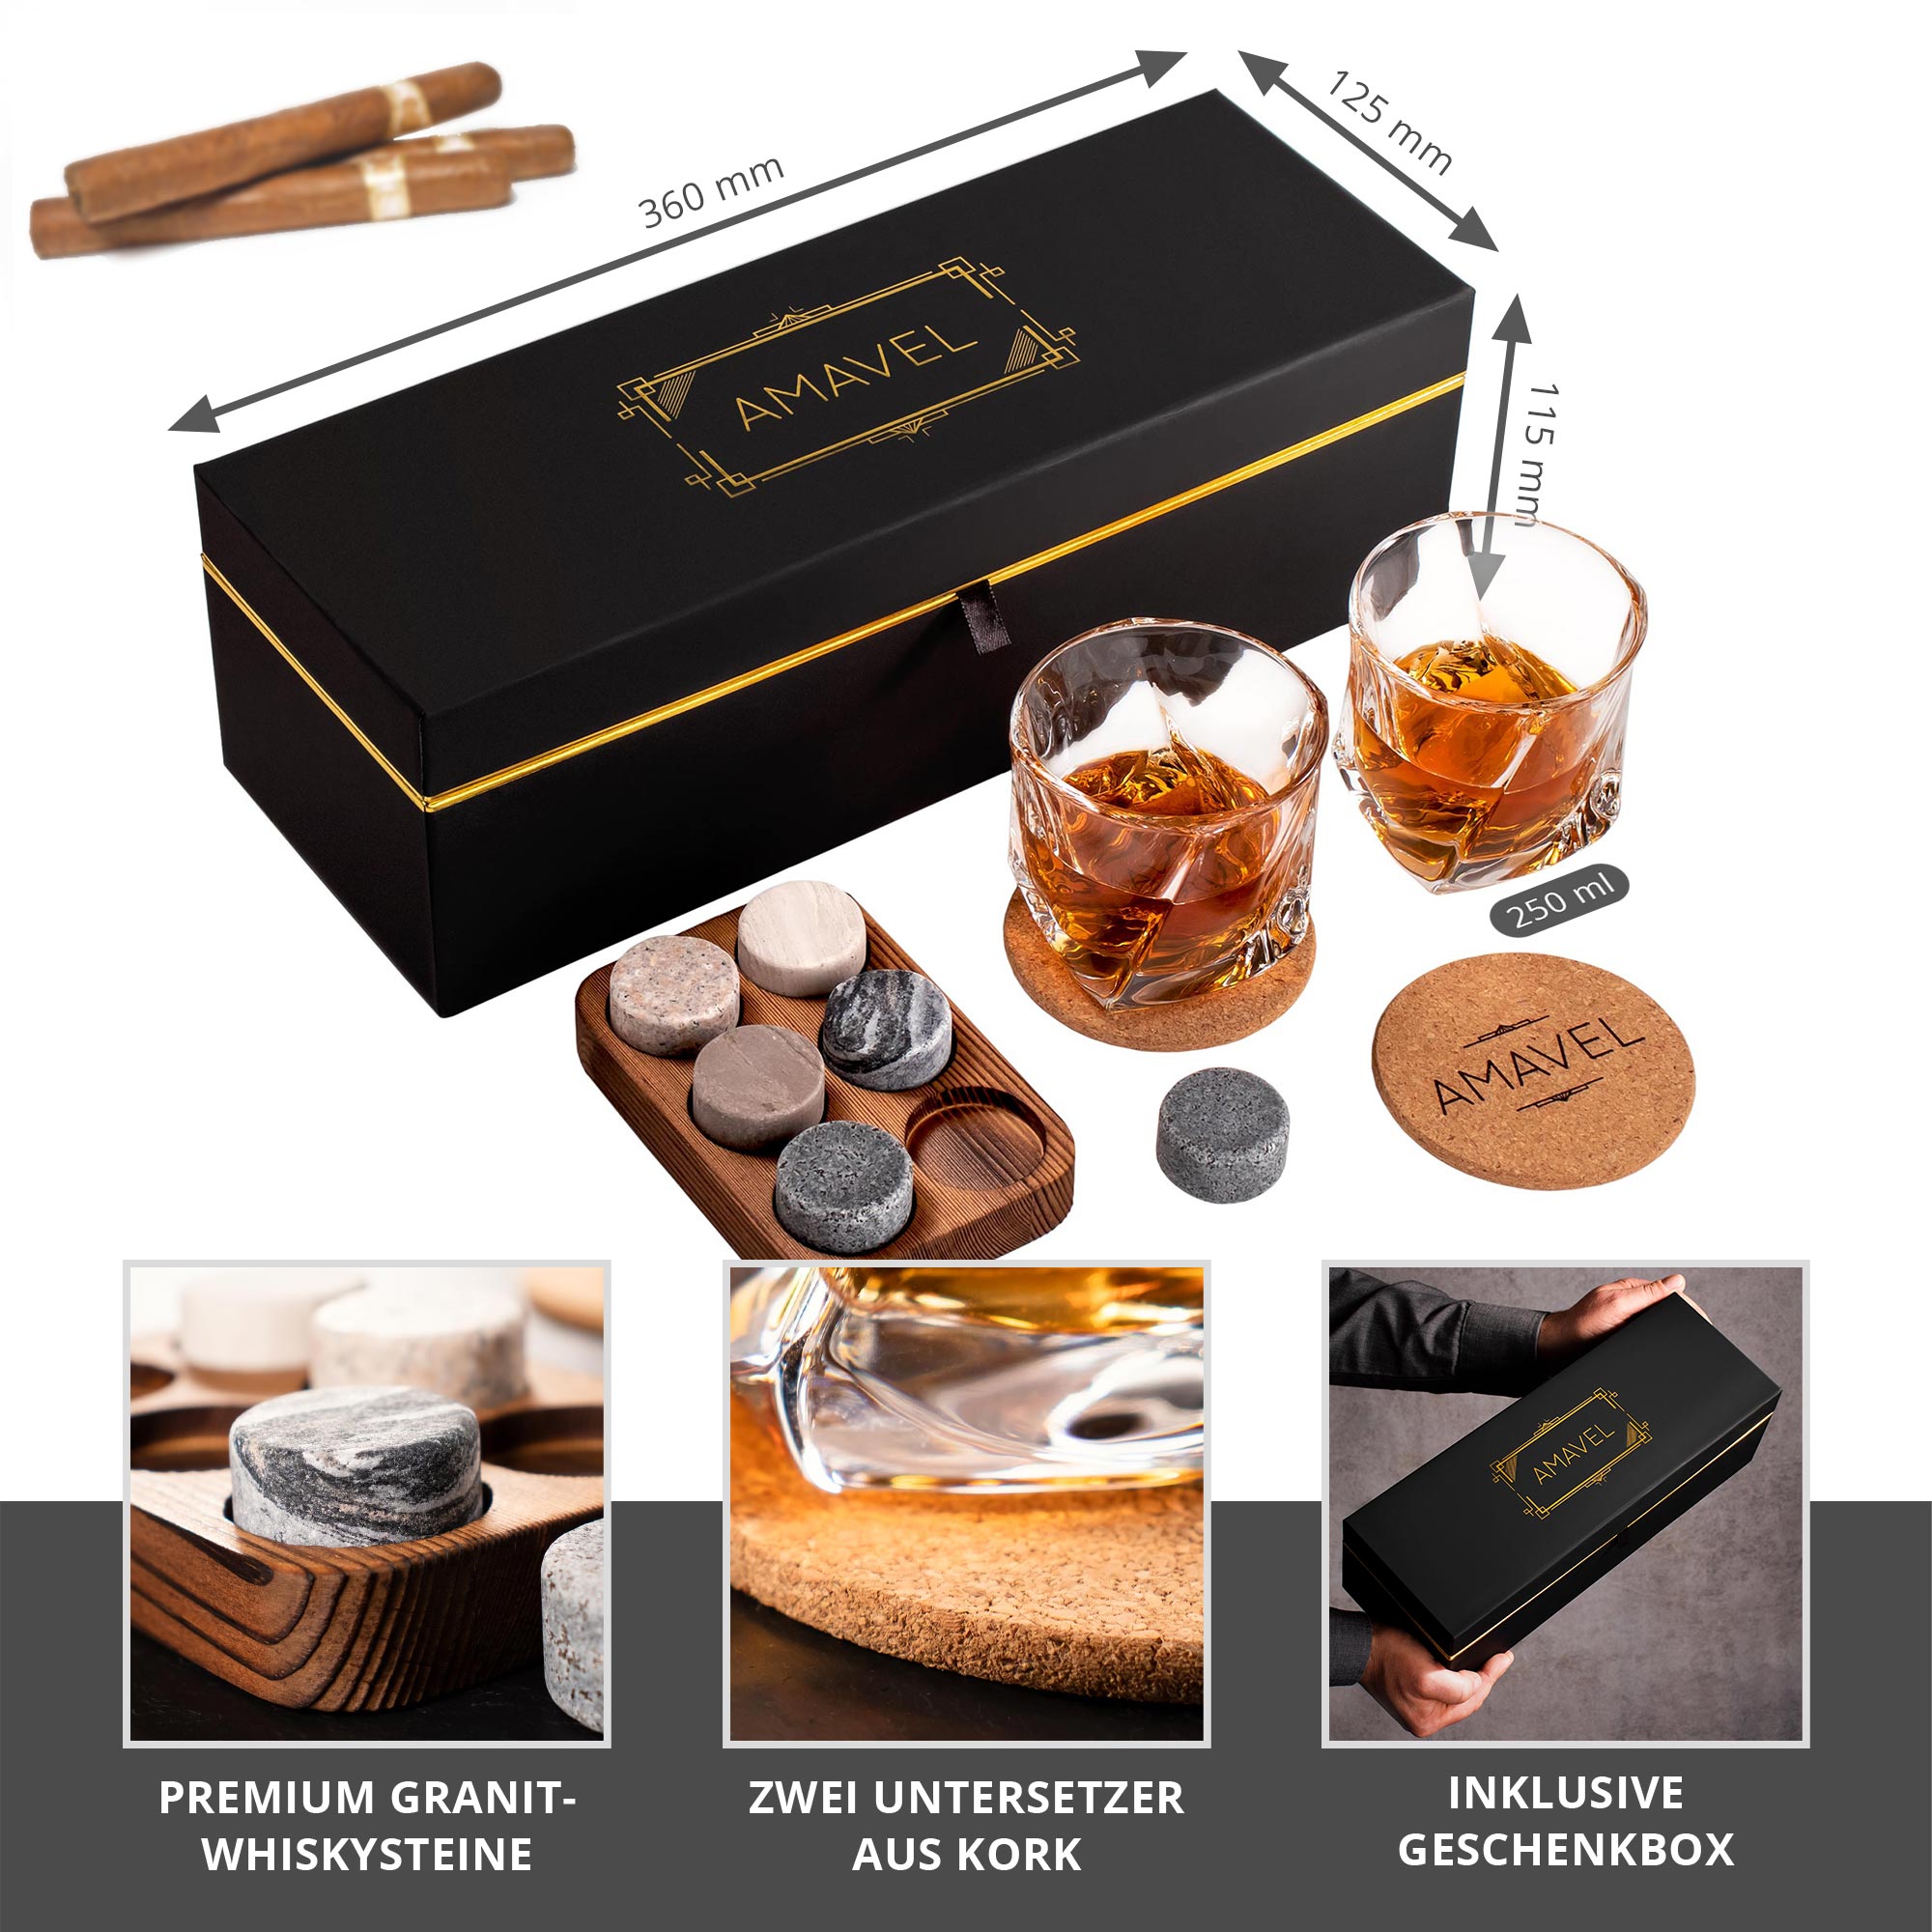 Whisky Set mit Whiskygläsern in edler Geschenkbox 0021-0002-EU-0000 - 4